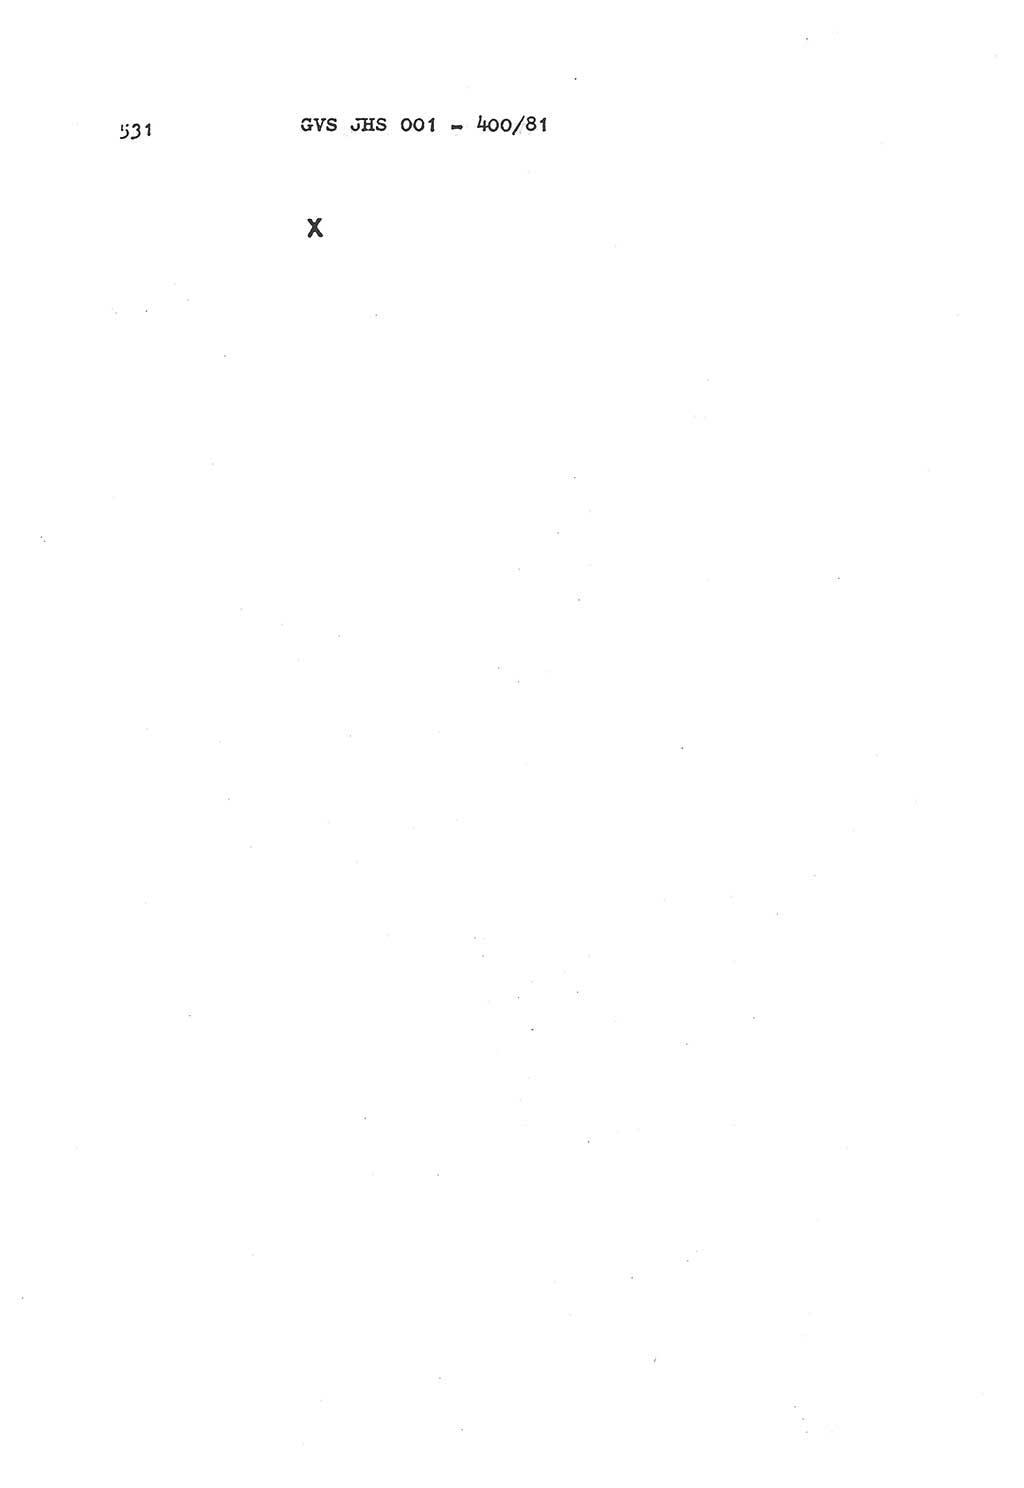 Wörterbuch der politisch-operativen Arbeit, Ministerium für Staatssicherheit (MfS) [Deutsche Demokratische Republik (DDR)], Juristische Hochschule (JHS), Geheime Verschlußsache (GVS) o001-400/81, Potsdam 1985, Blatt 531 (Wb. pol.-op. Arb. MfS DDR JHS GVS o001-400/81 1985, Bl. 531)